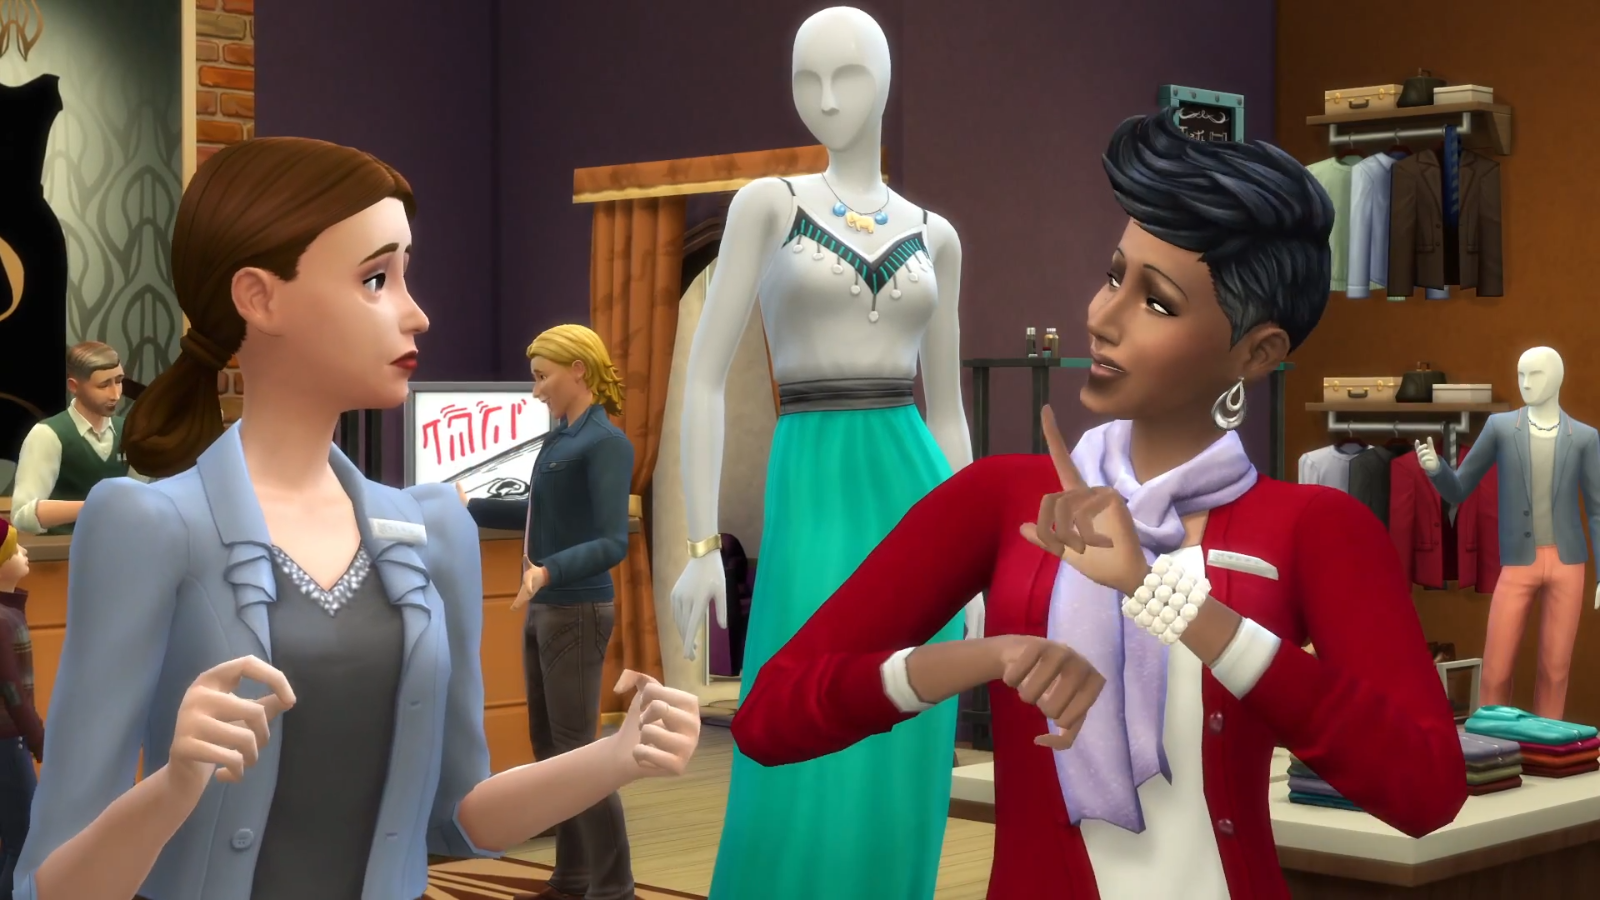 The Sims 4: Witaj w Pracy | Simspedia | FANDOM powered by ...